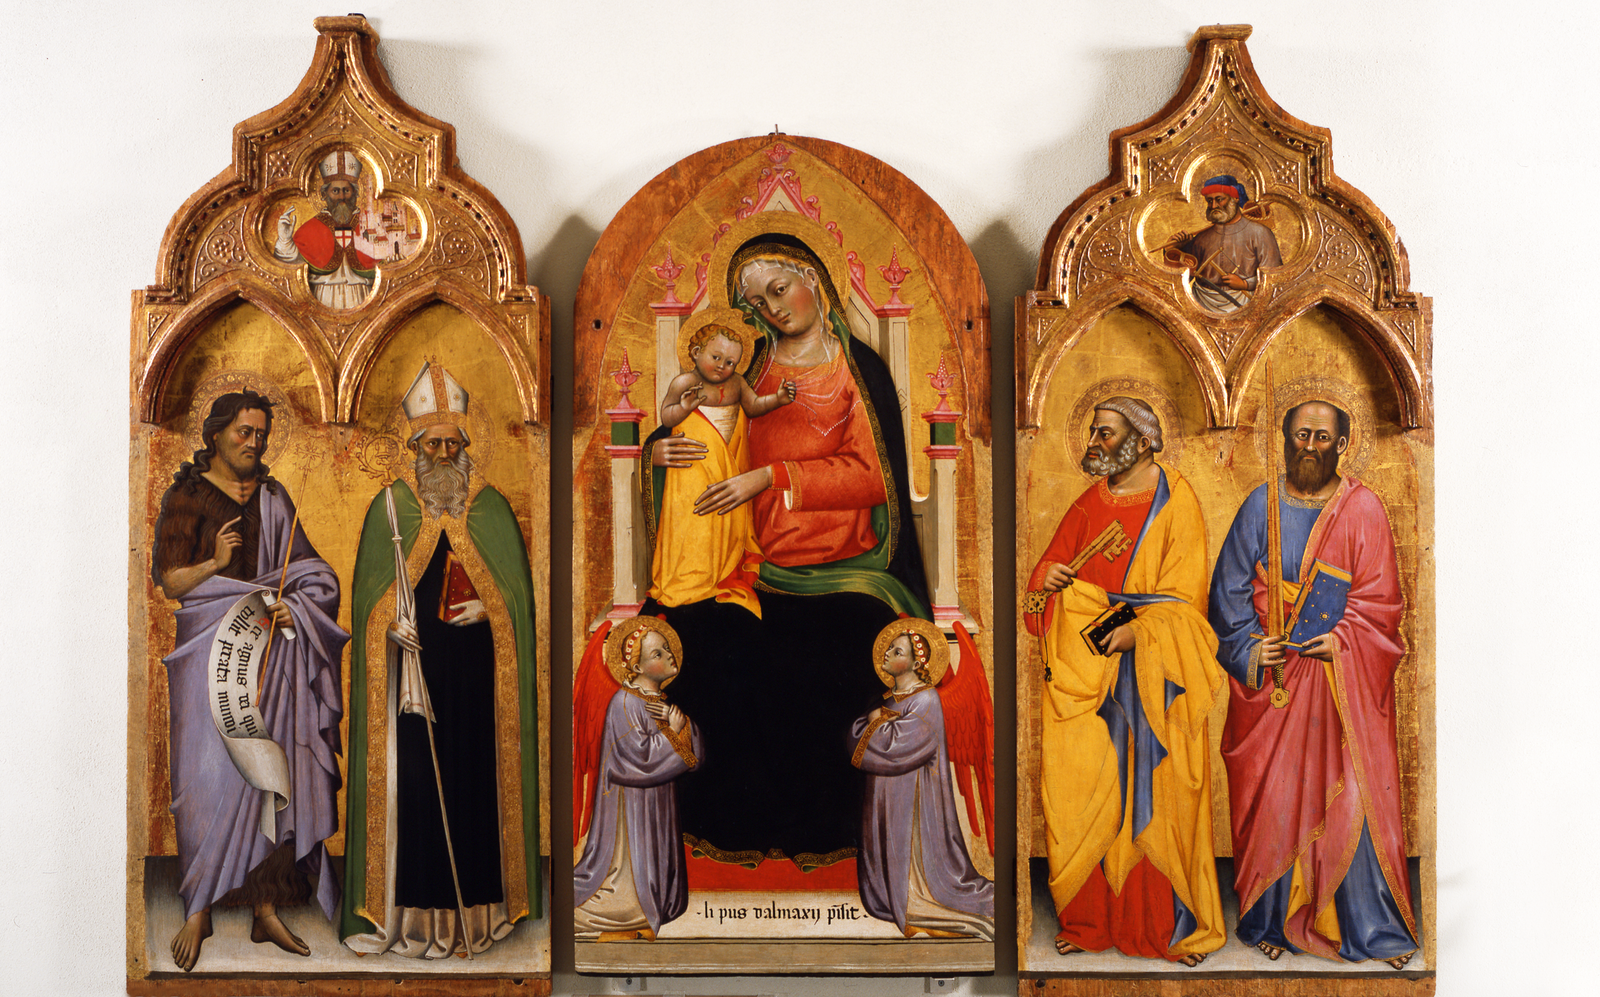 Lippo di Dalmasio, Vergine col Bambino e Santi, 1395-1400. Courtesy of Bologna Pinacoteca Nazionale